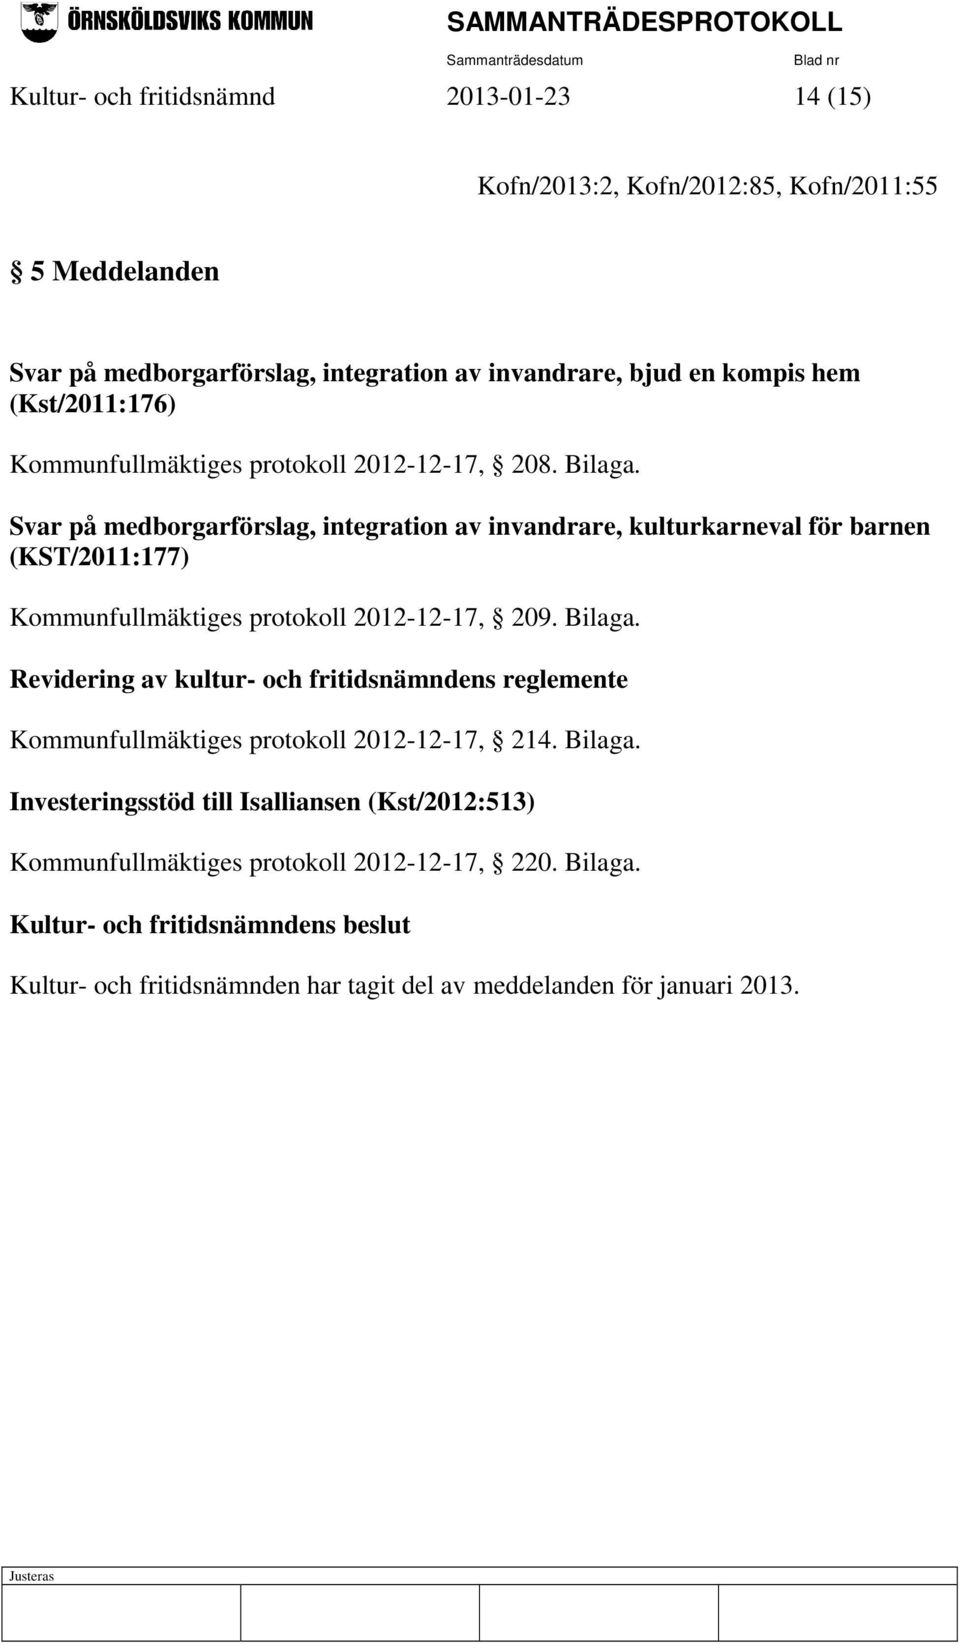 Svar på medborgarförslag, integration av invandrare, kulturkarneval för barnen (KST/2011:177) Kommunfullmäktiges protokoll 2012-12-17, 209. Bilaga.